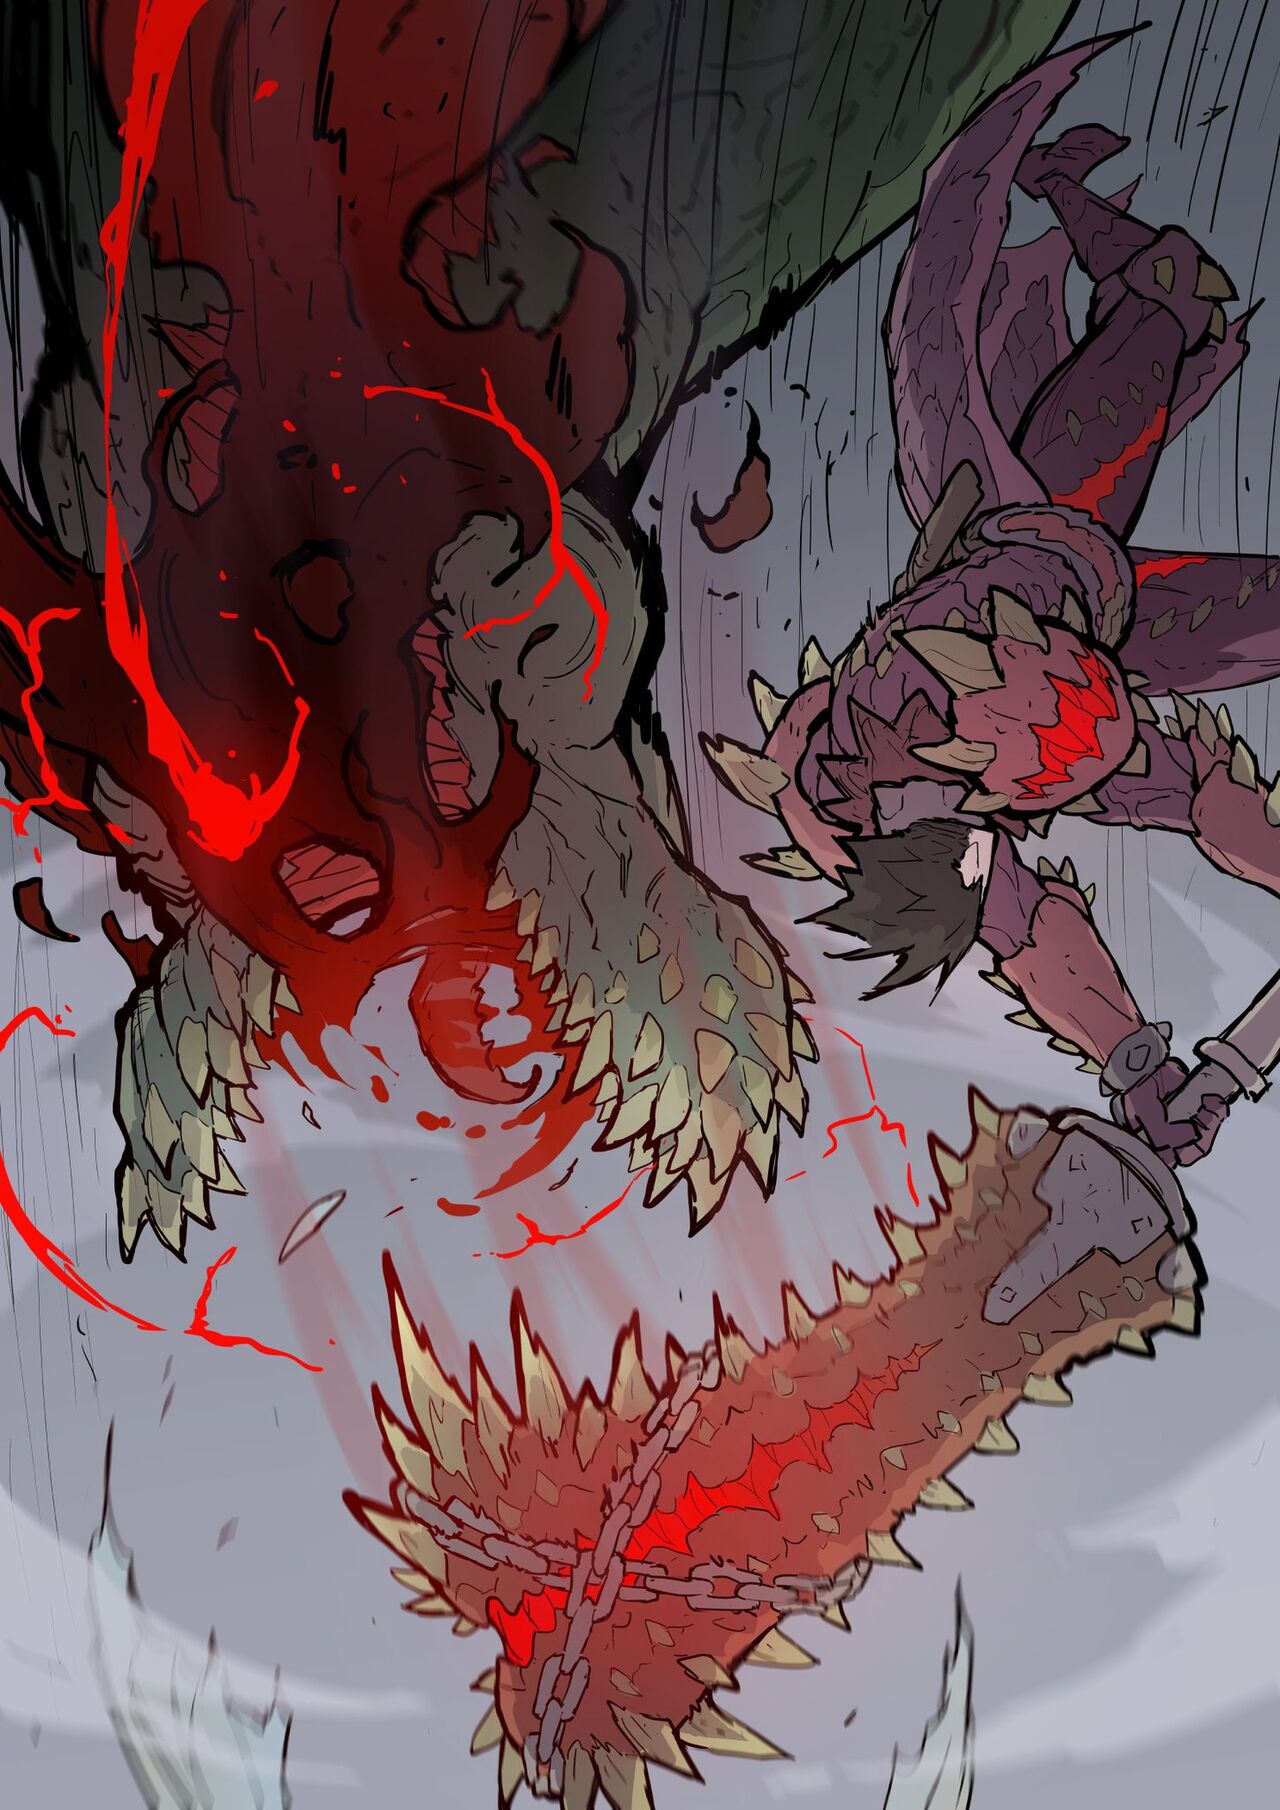 [Taojinn] Monster Hunter Fatalis Fight (Ongoing)【LD个人翻译】 